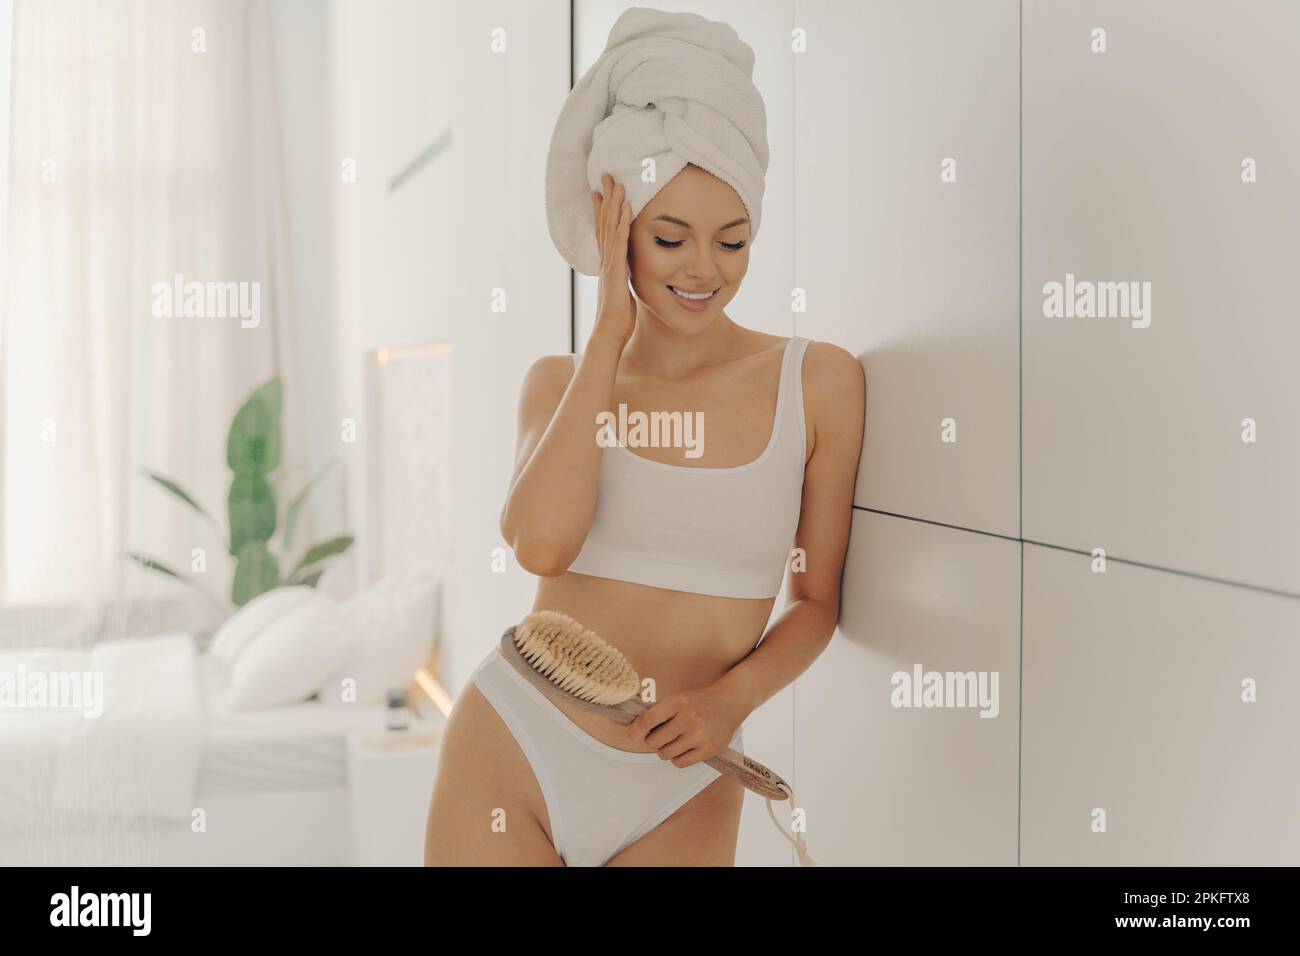 Rilassato giovane donna caucasica indossa asciugamano avvolto sulla testa, si sente rinfrescato dopo aver fatto la doccia e massaggio secco con spazzola, posa in bagno accogliente a Foto Stock